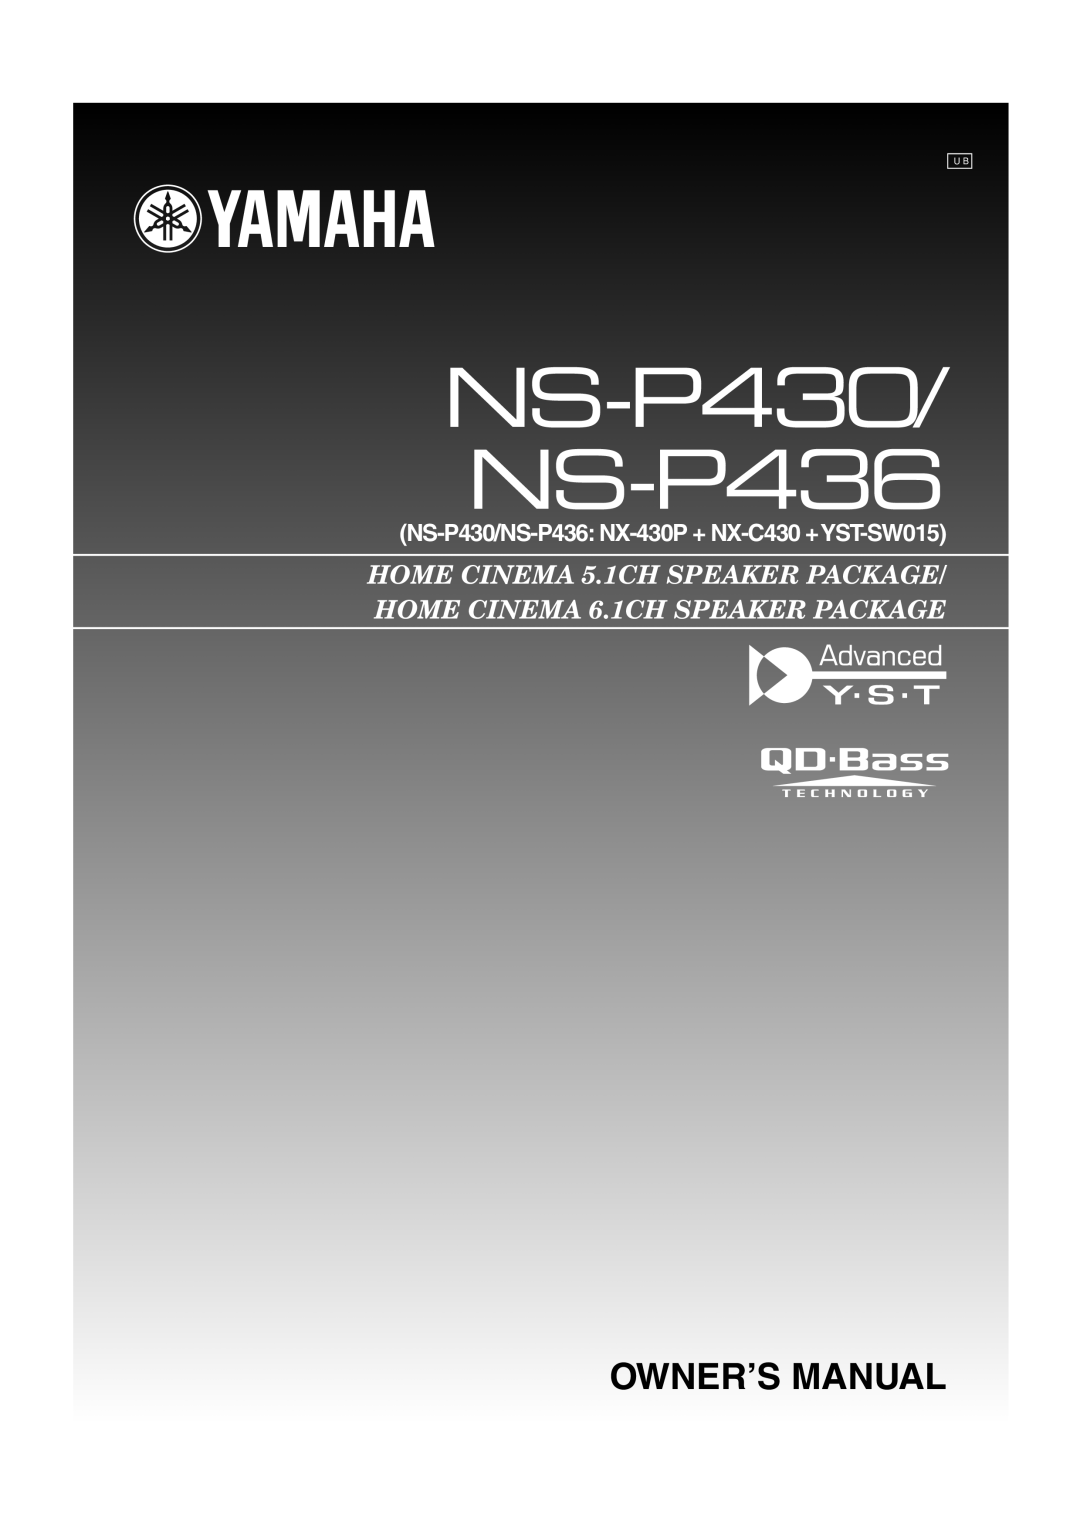 Yamaha HTR-5940 owner manual NS-P430/ NS-P436, Owner’S Manual, NS-P430/NS-P436 NX-430P+ NX-C430 +YST-SW015 